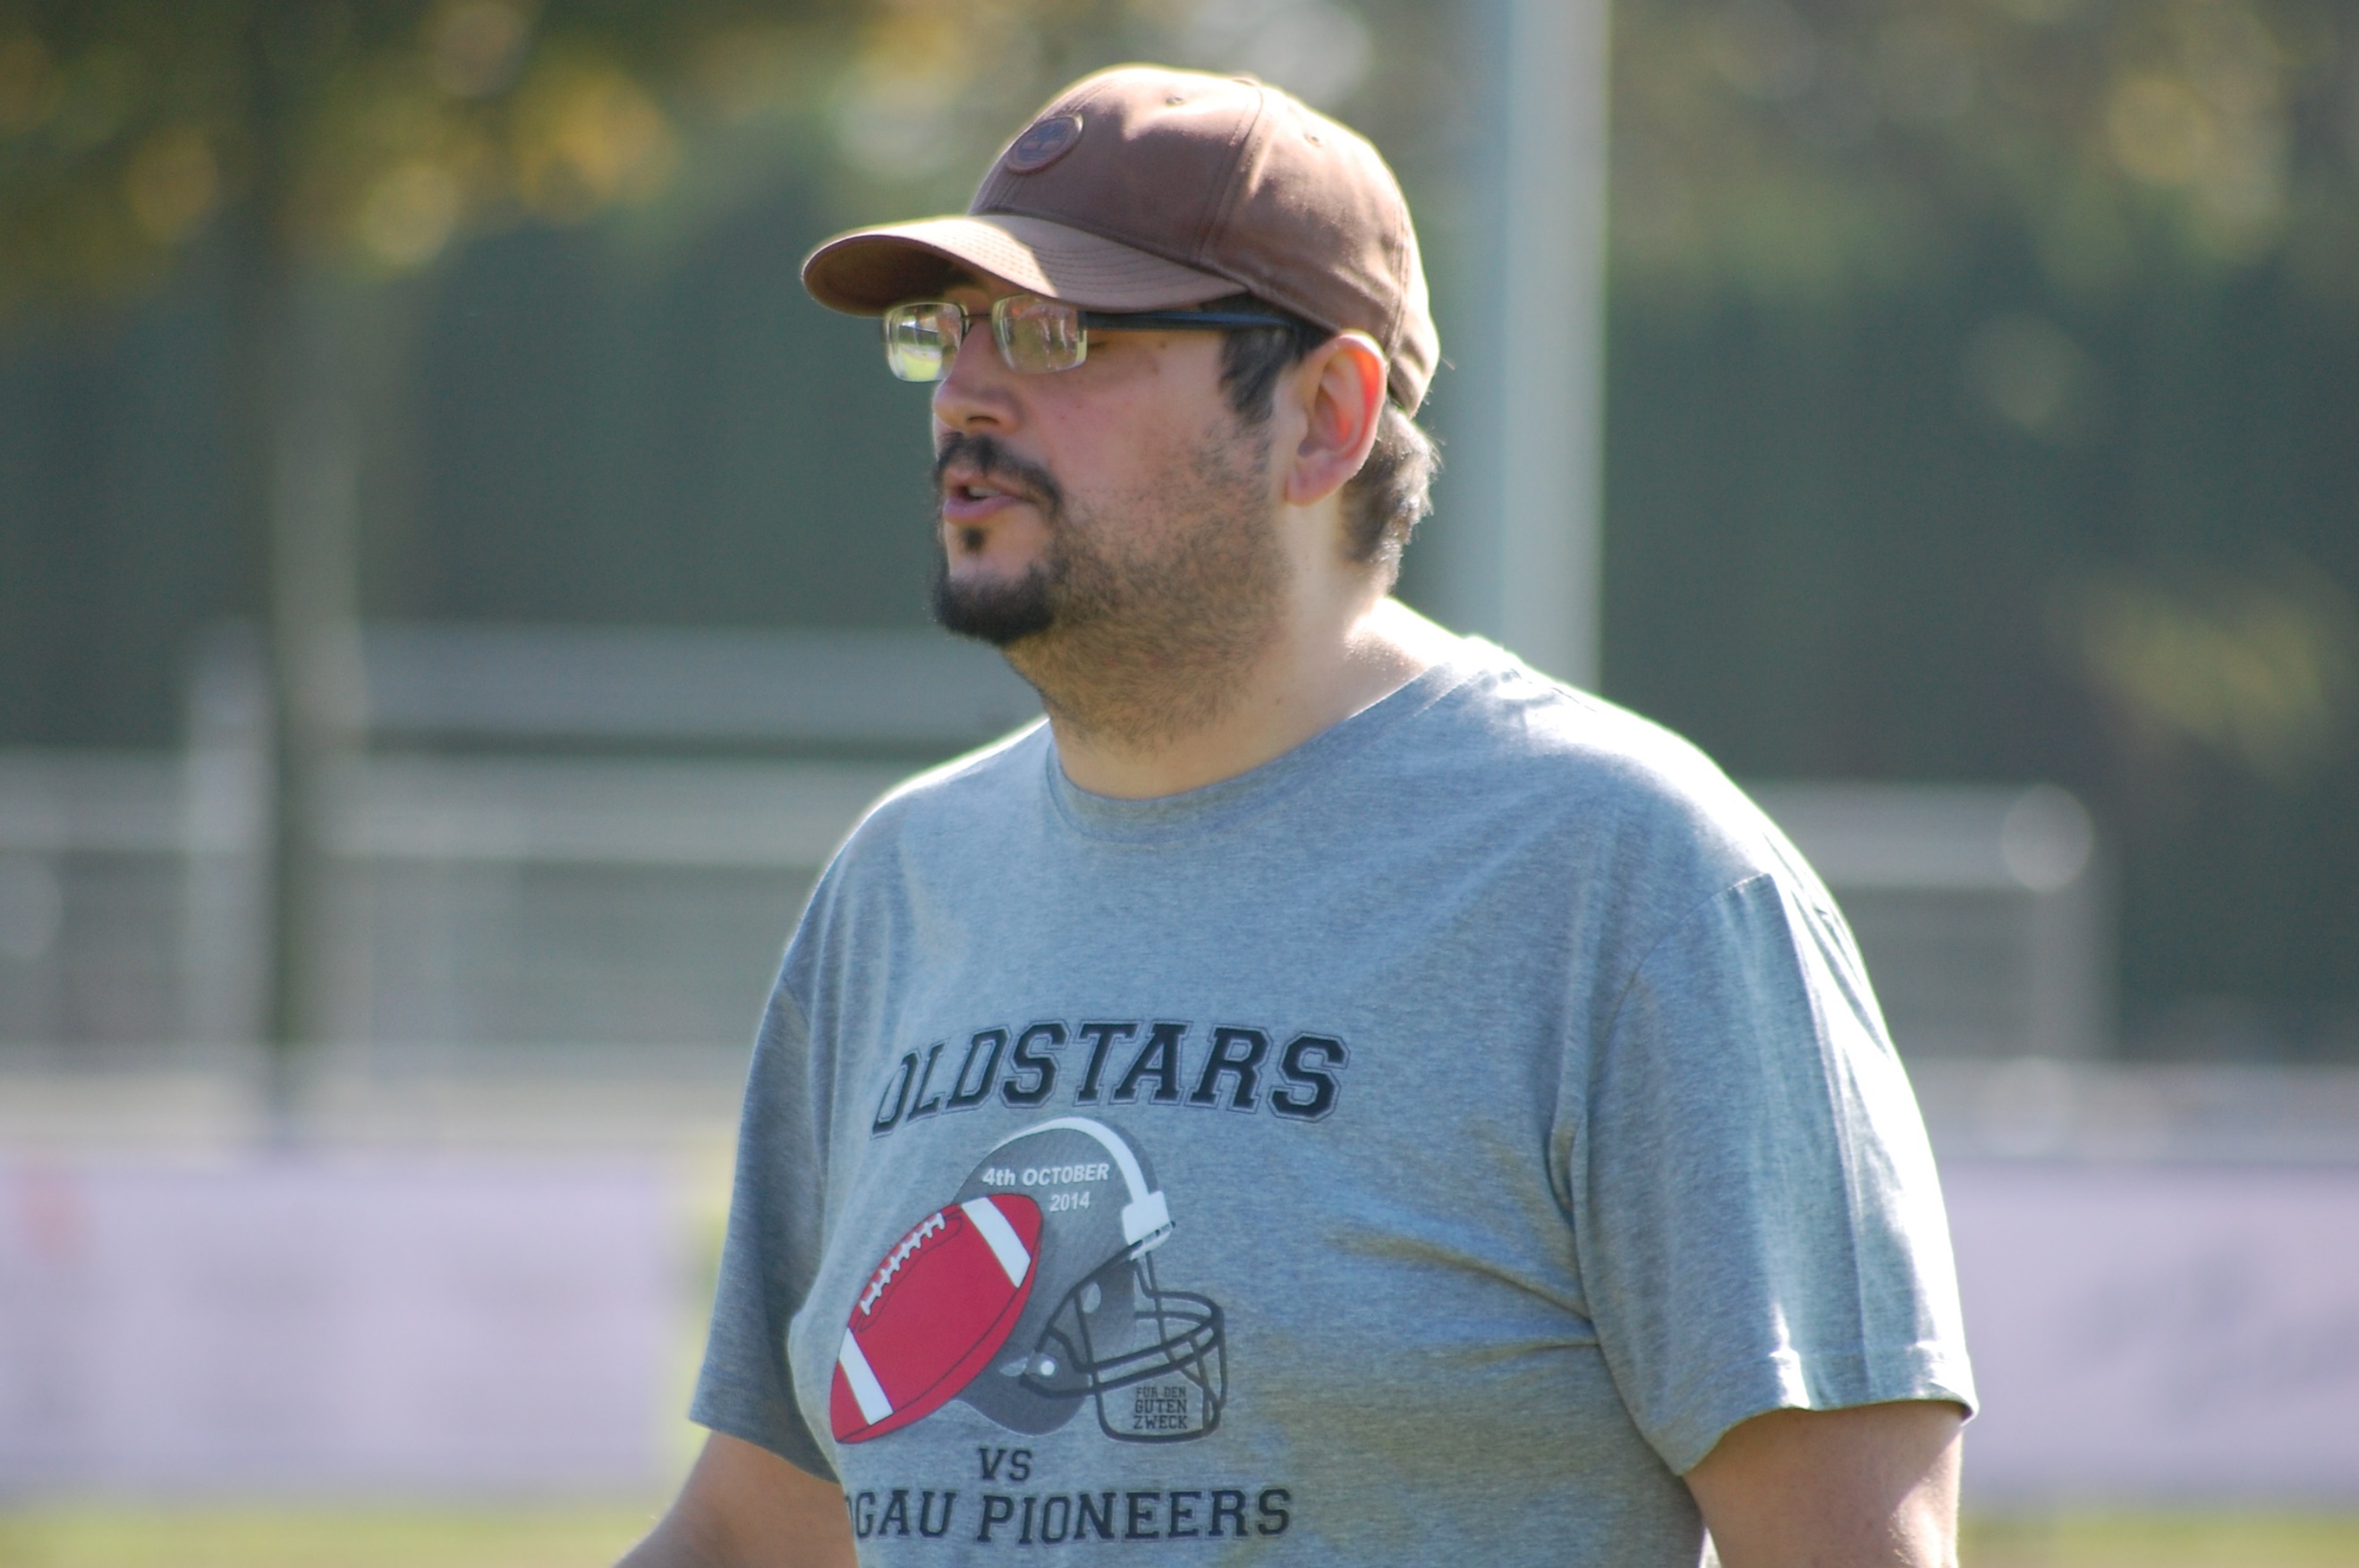 Coach Juan Ordonez